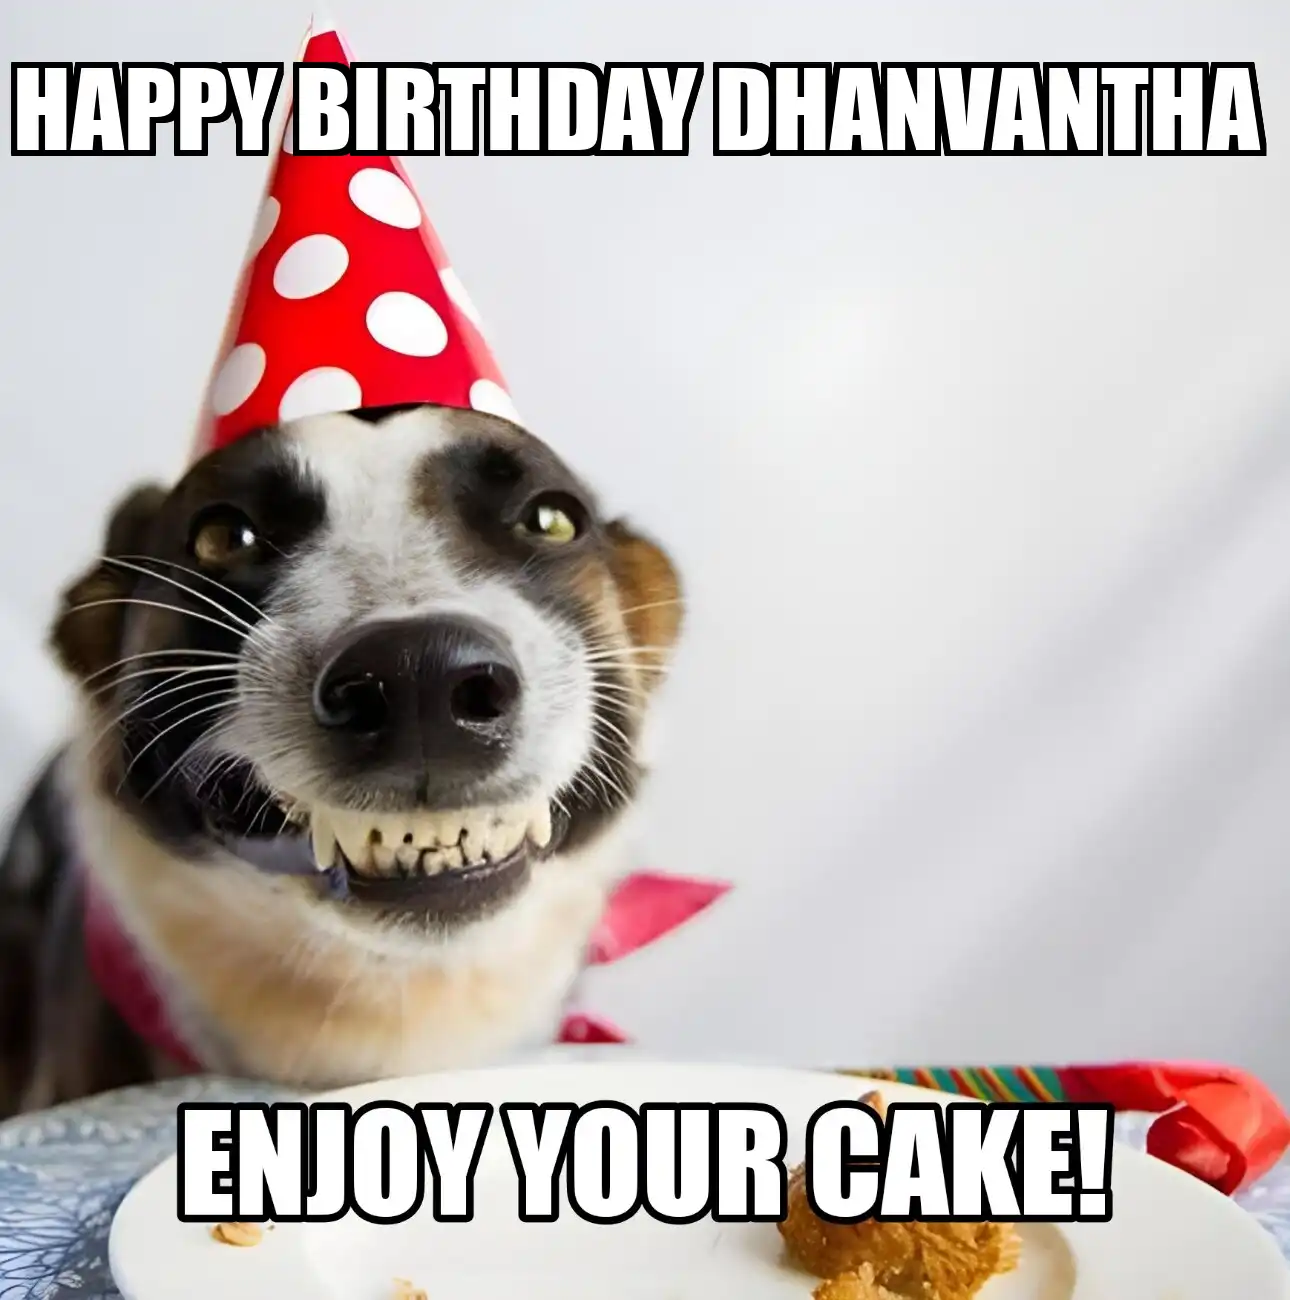 Happy Birthday Dhanvantha Enjoy Your Cake Dog Meme